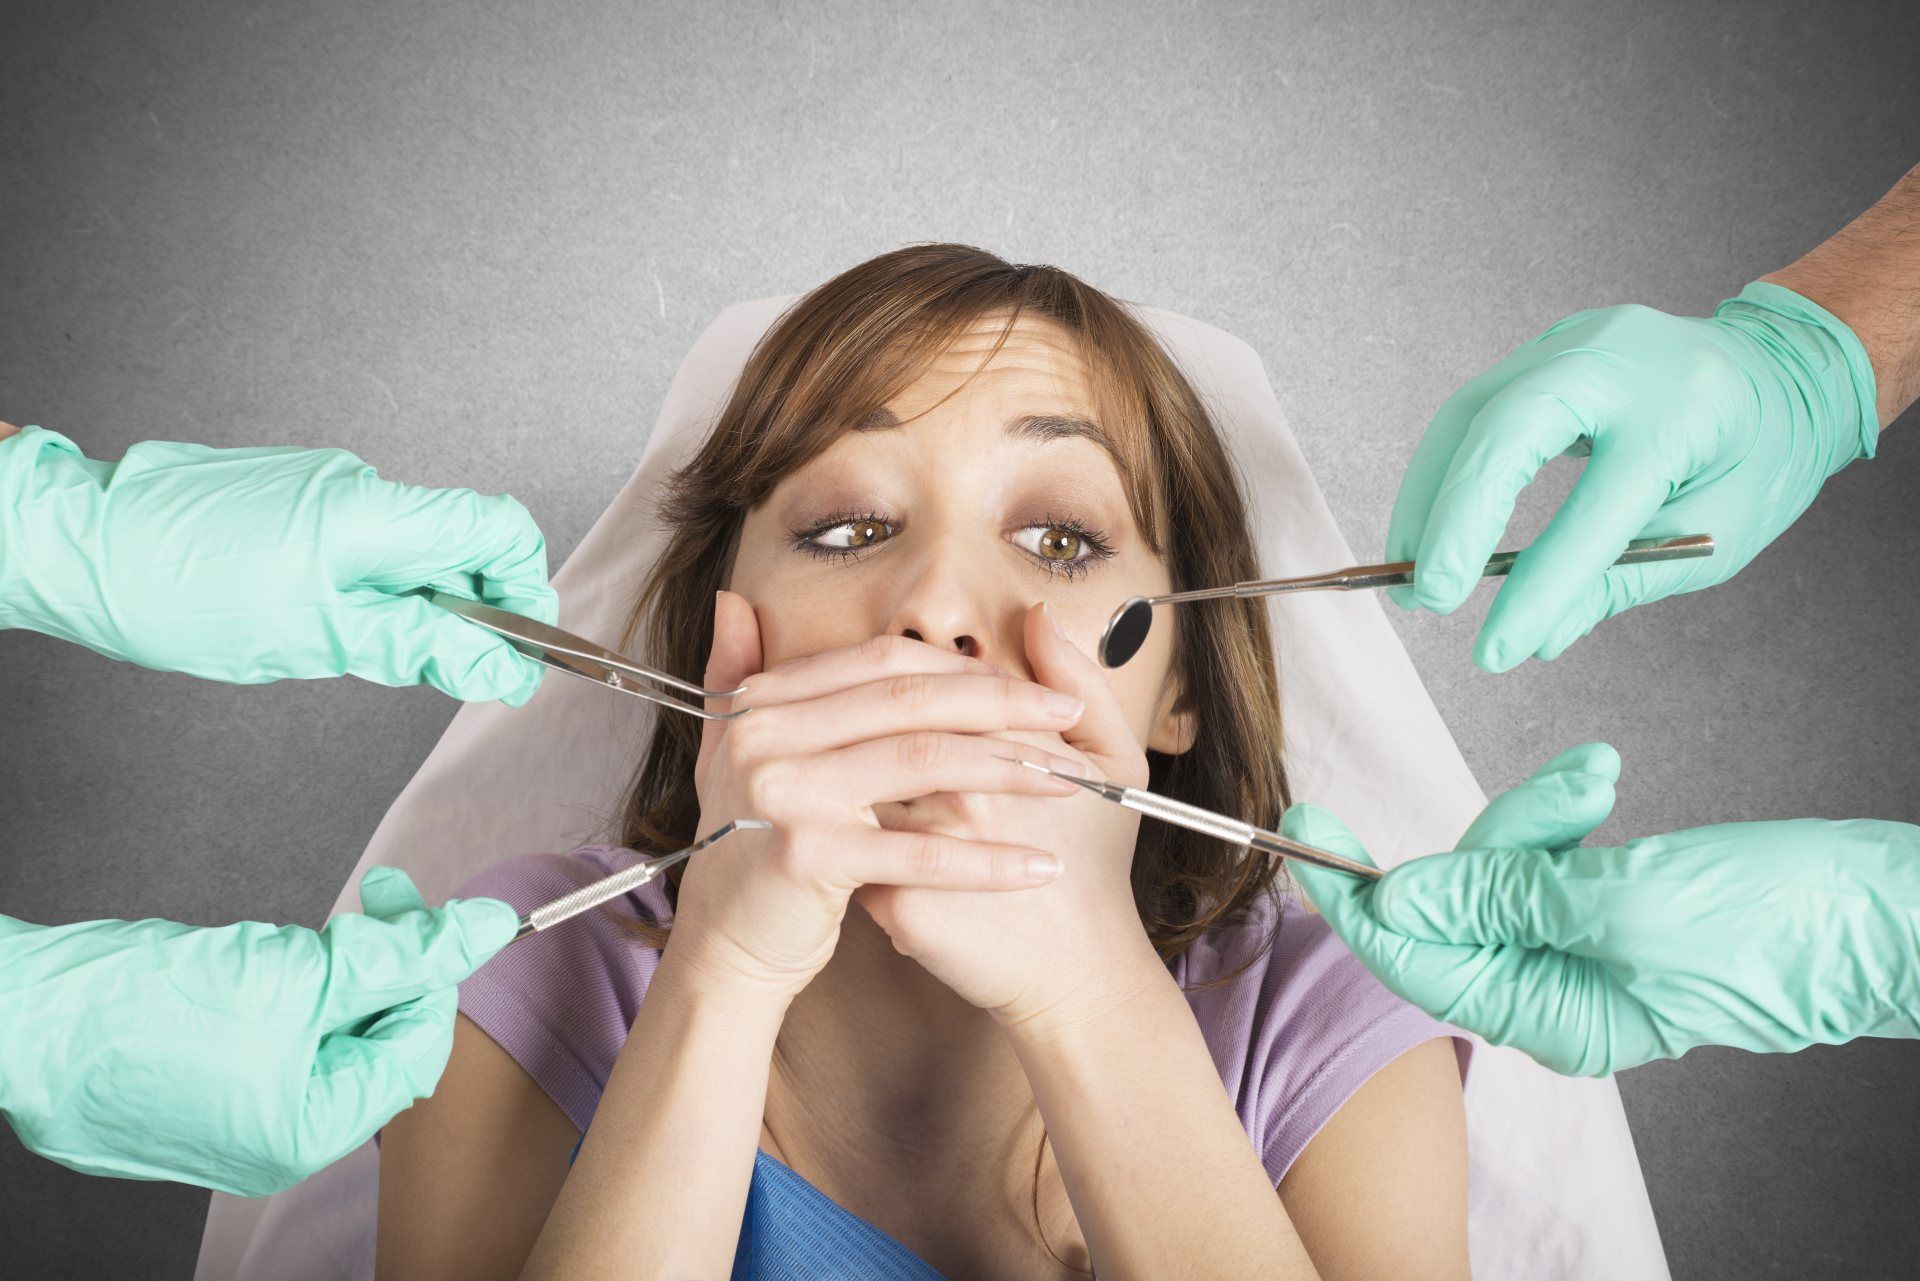 страх перед стоматологом